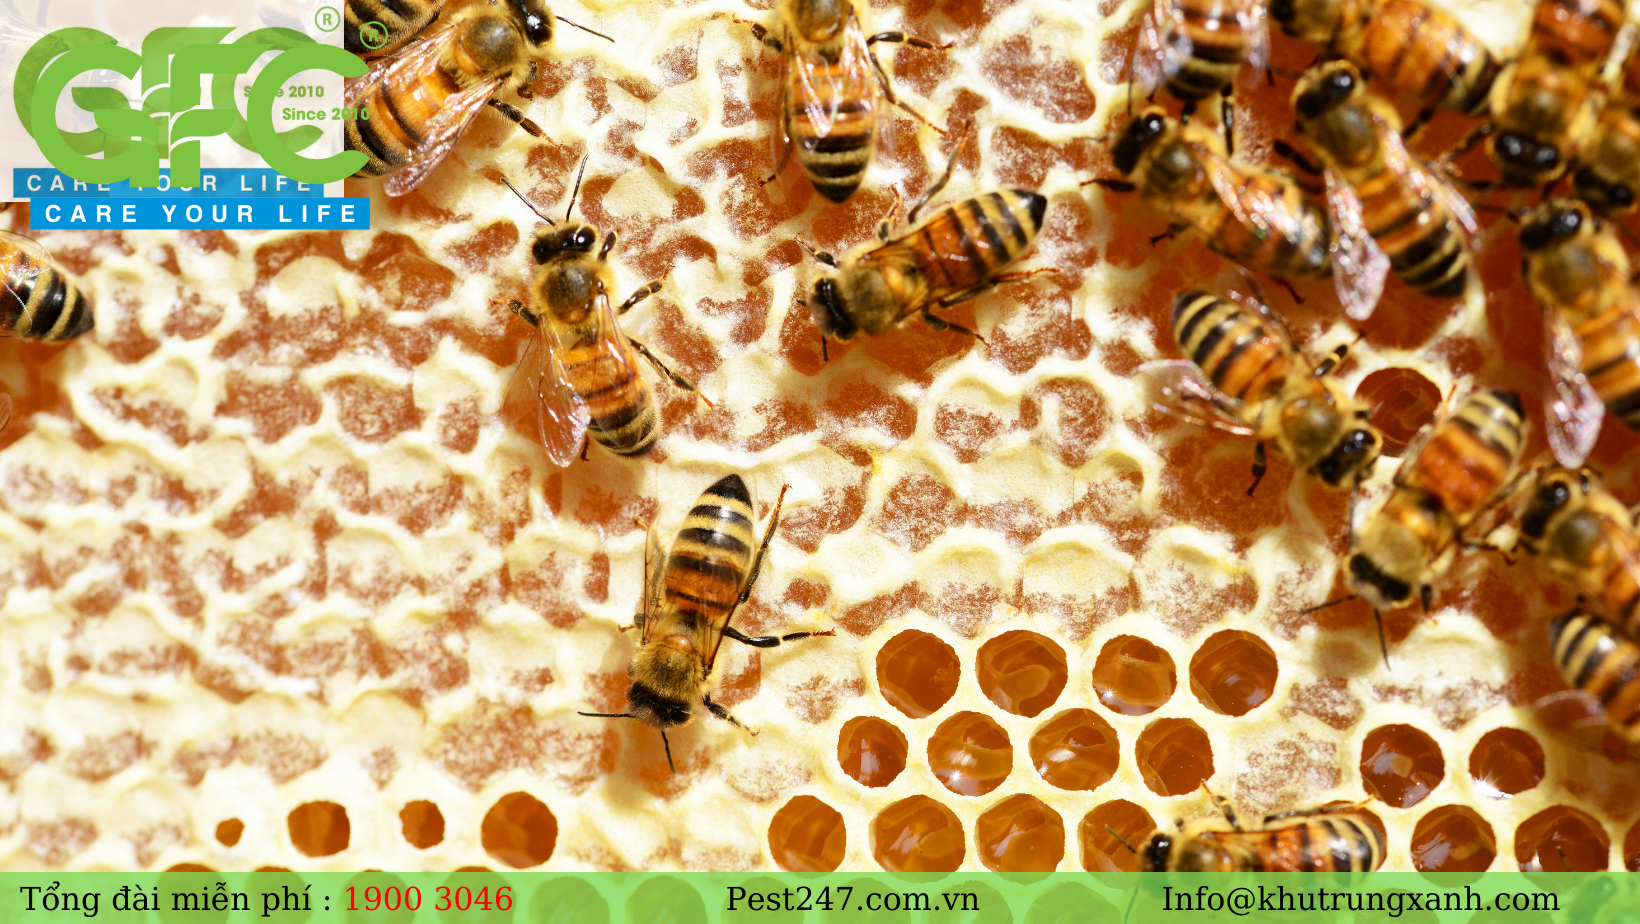 30 – 50 triệu năm trước, ong đã xuất hiện với khoảng 20,000 loài khác nhau trên thế giới.